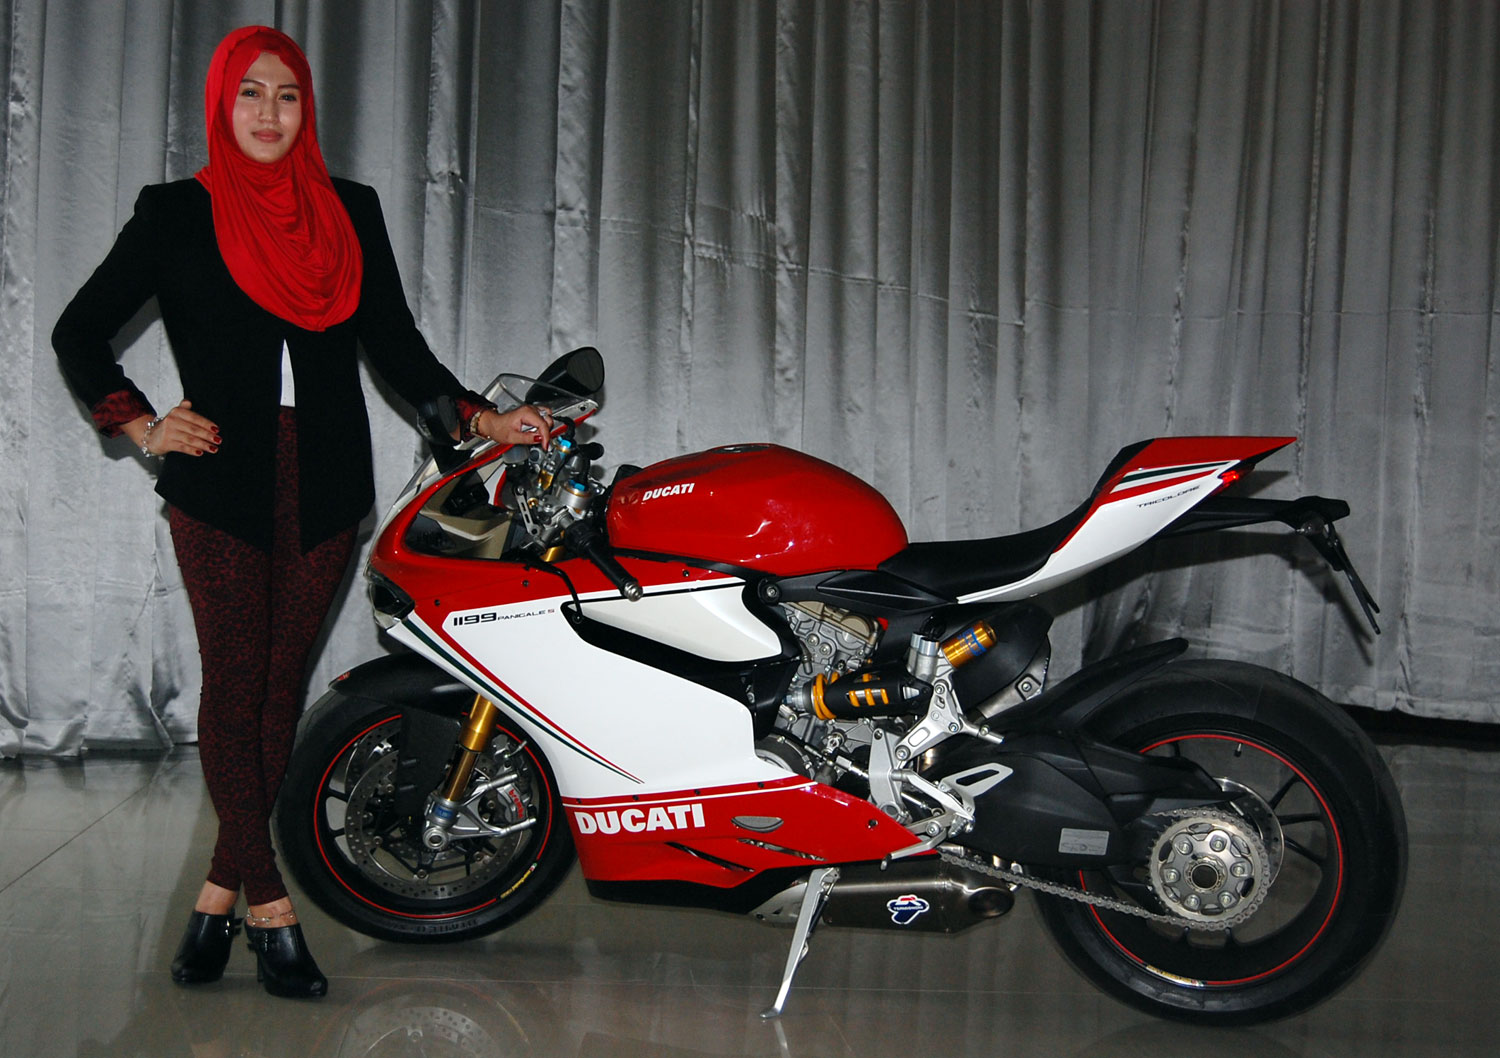 Marissa Lady Biker Ducati Dari Cirebon Merdekacom